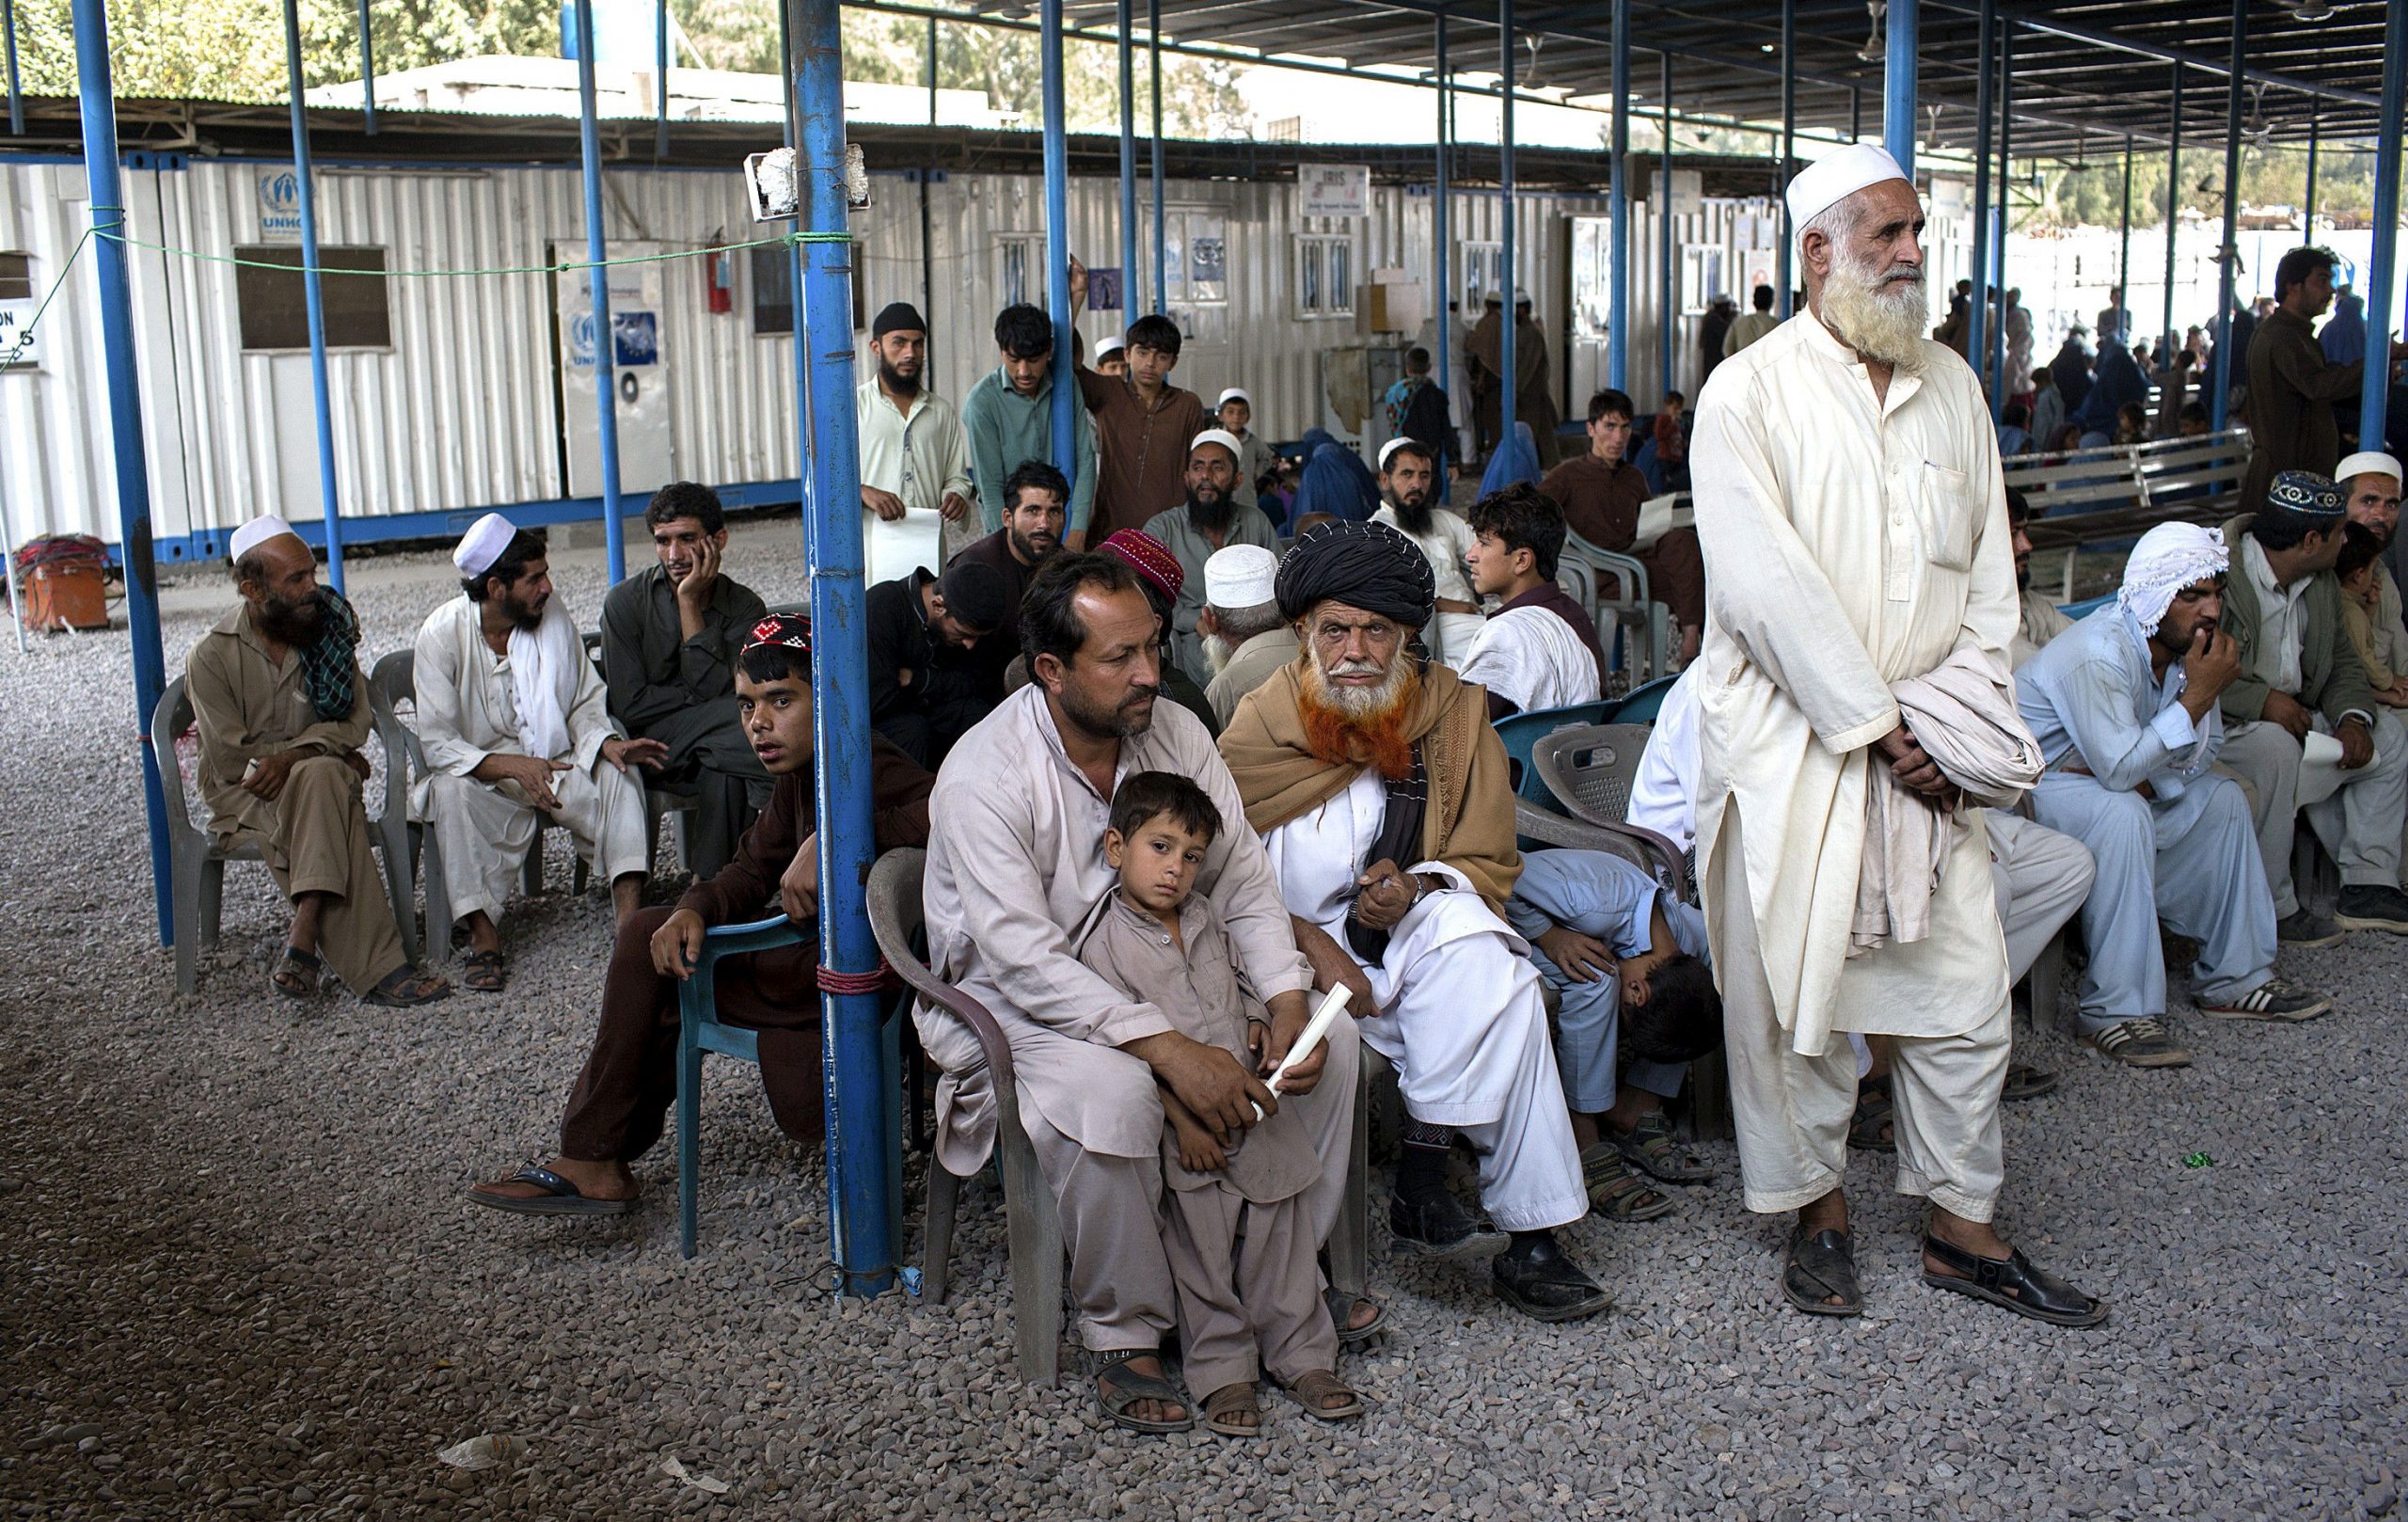 La falta de dinero en efectivo deja a Afganistán en una situación límite